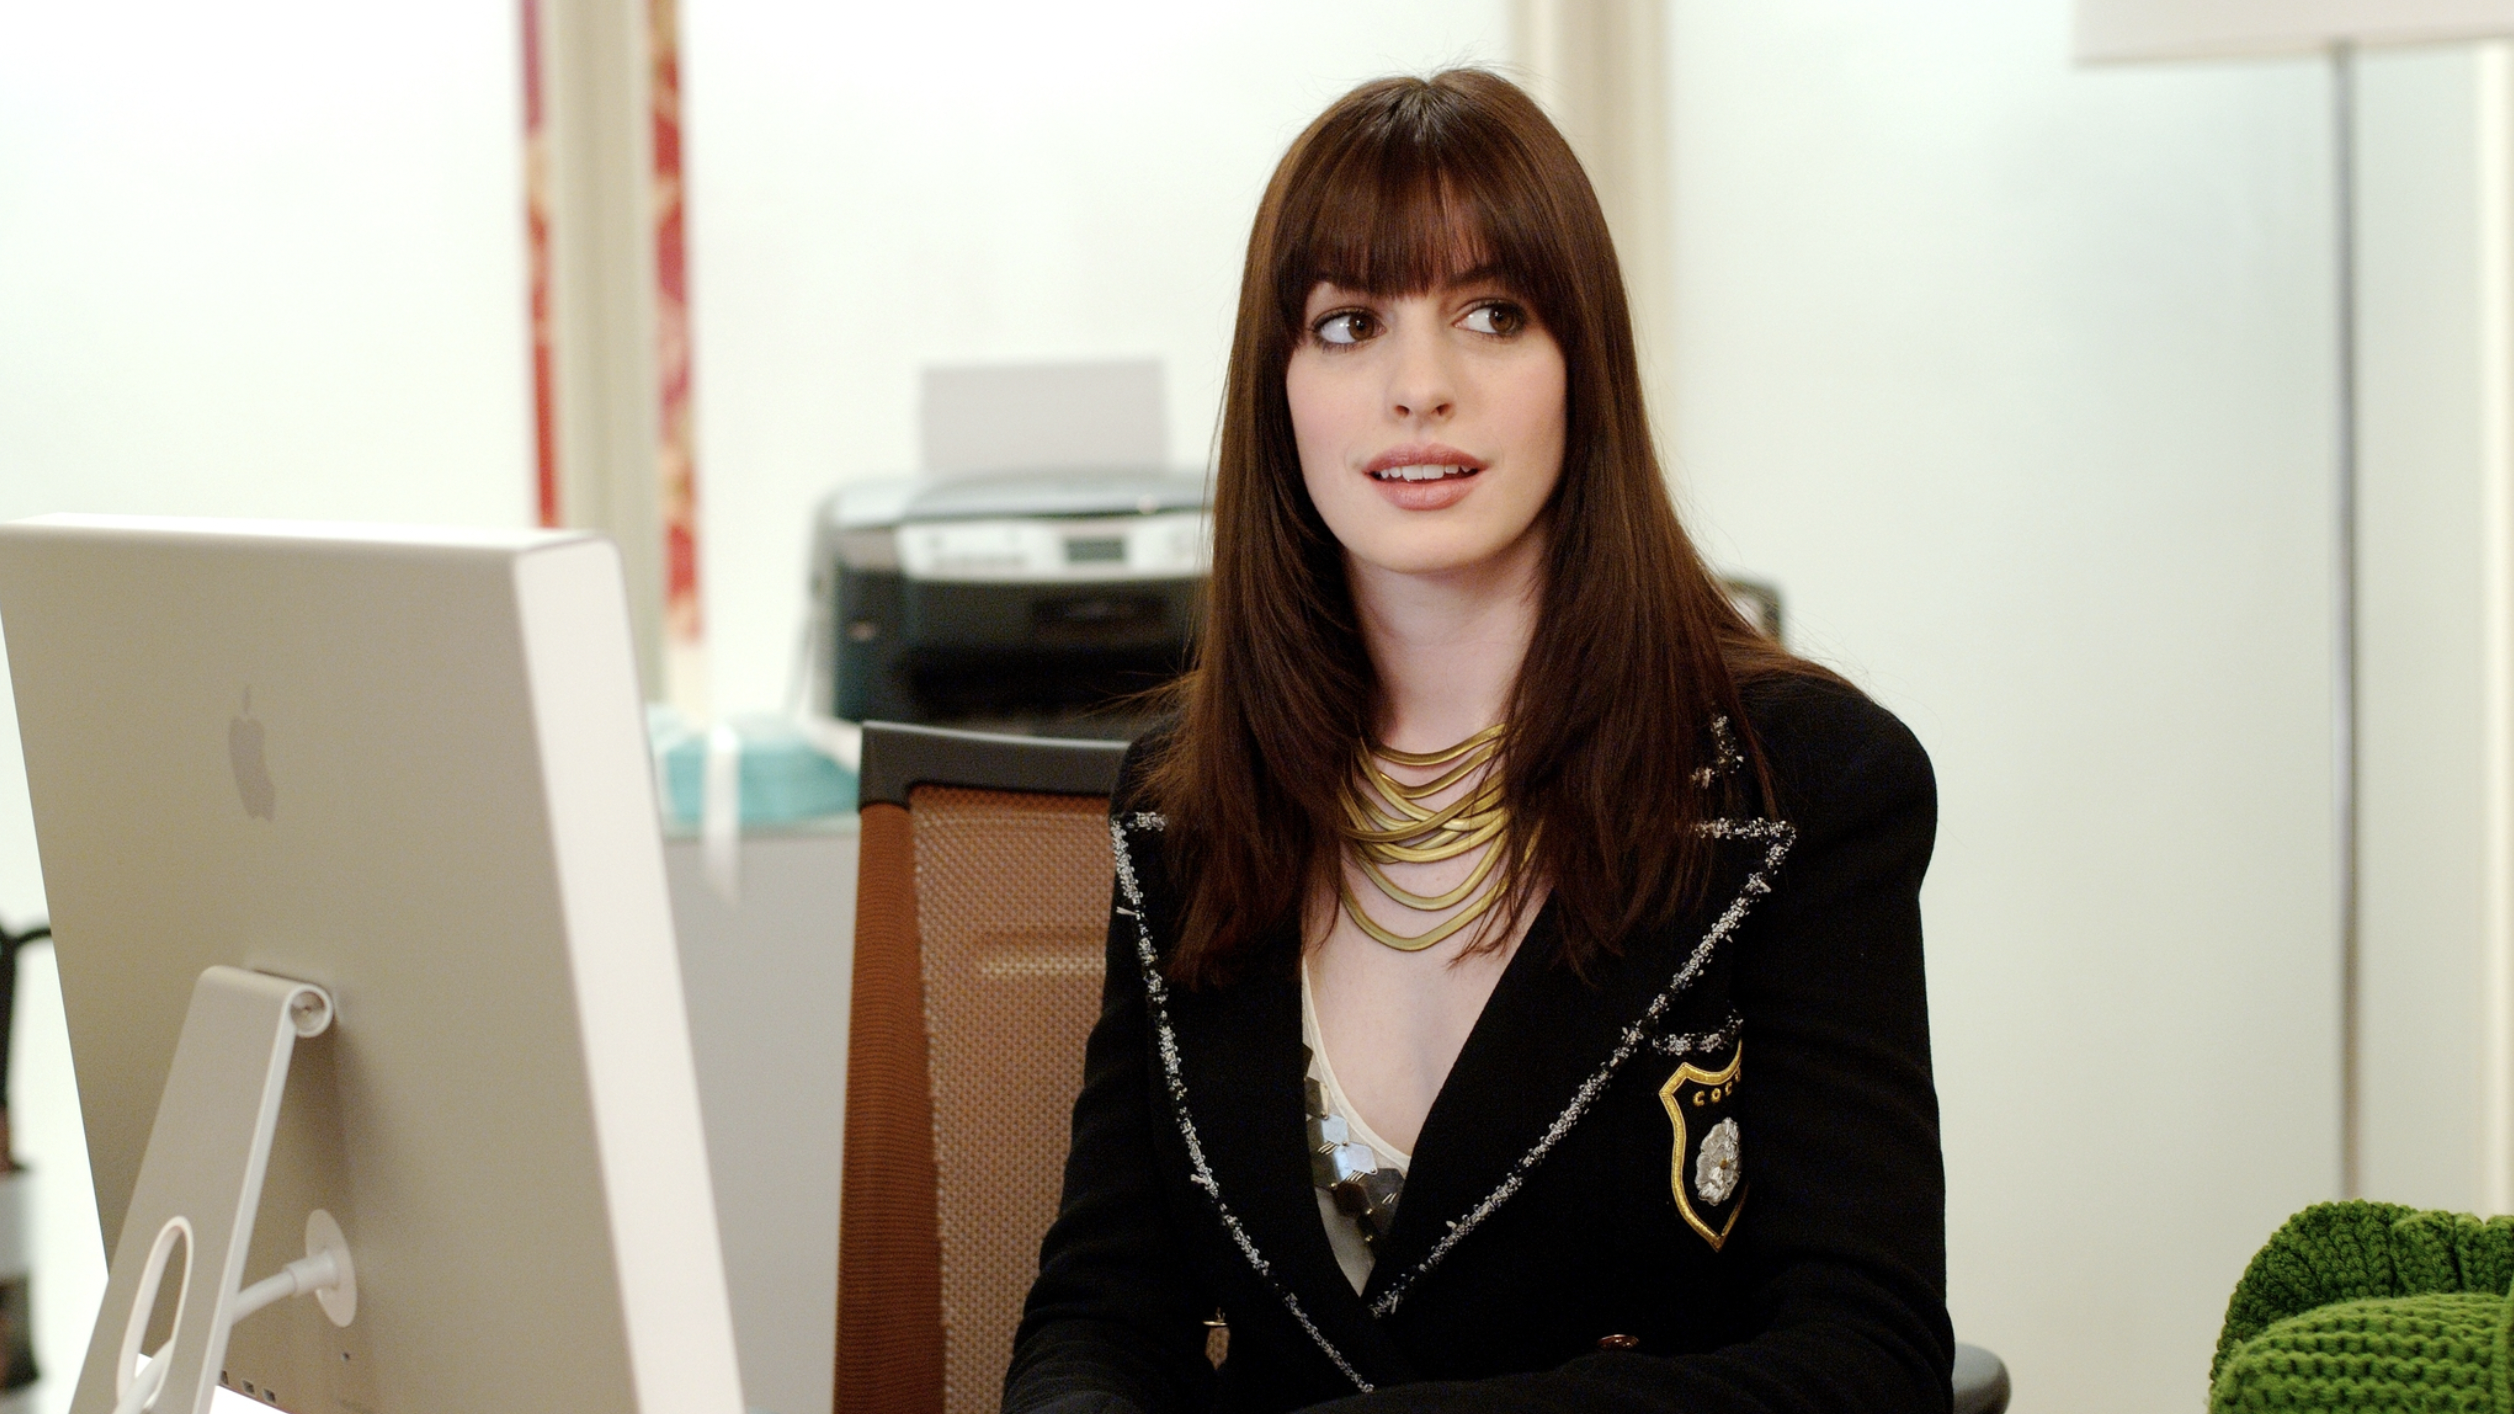 Anne Hathaway’s Iconic Chanel Blazer in ‘The Devil Wears Prada’ Is on Farfetch